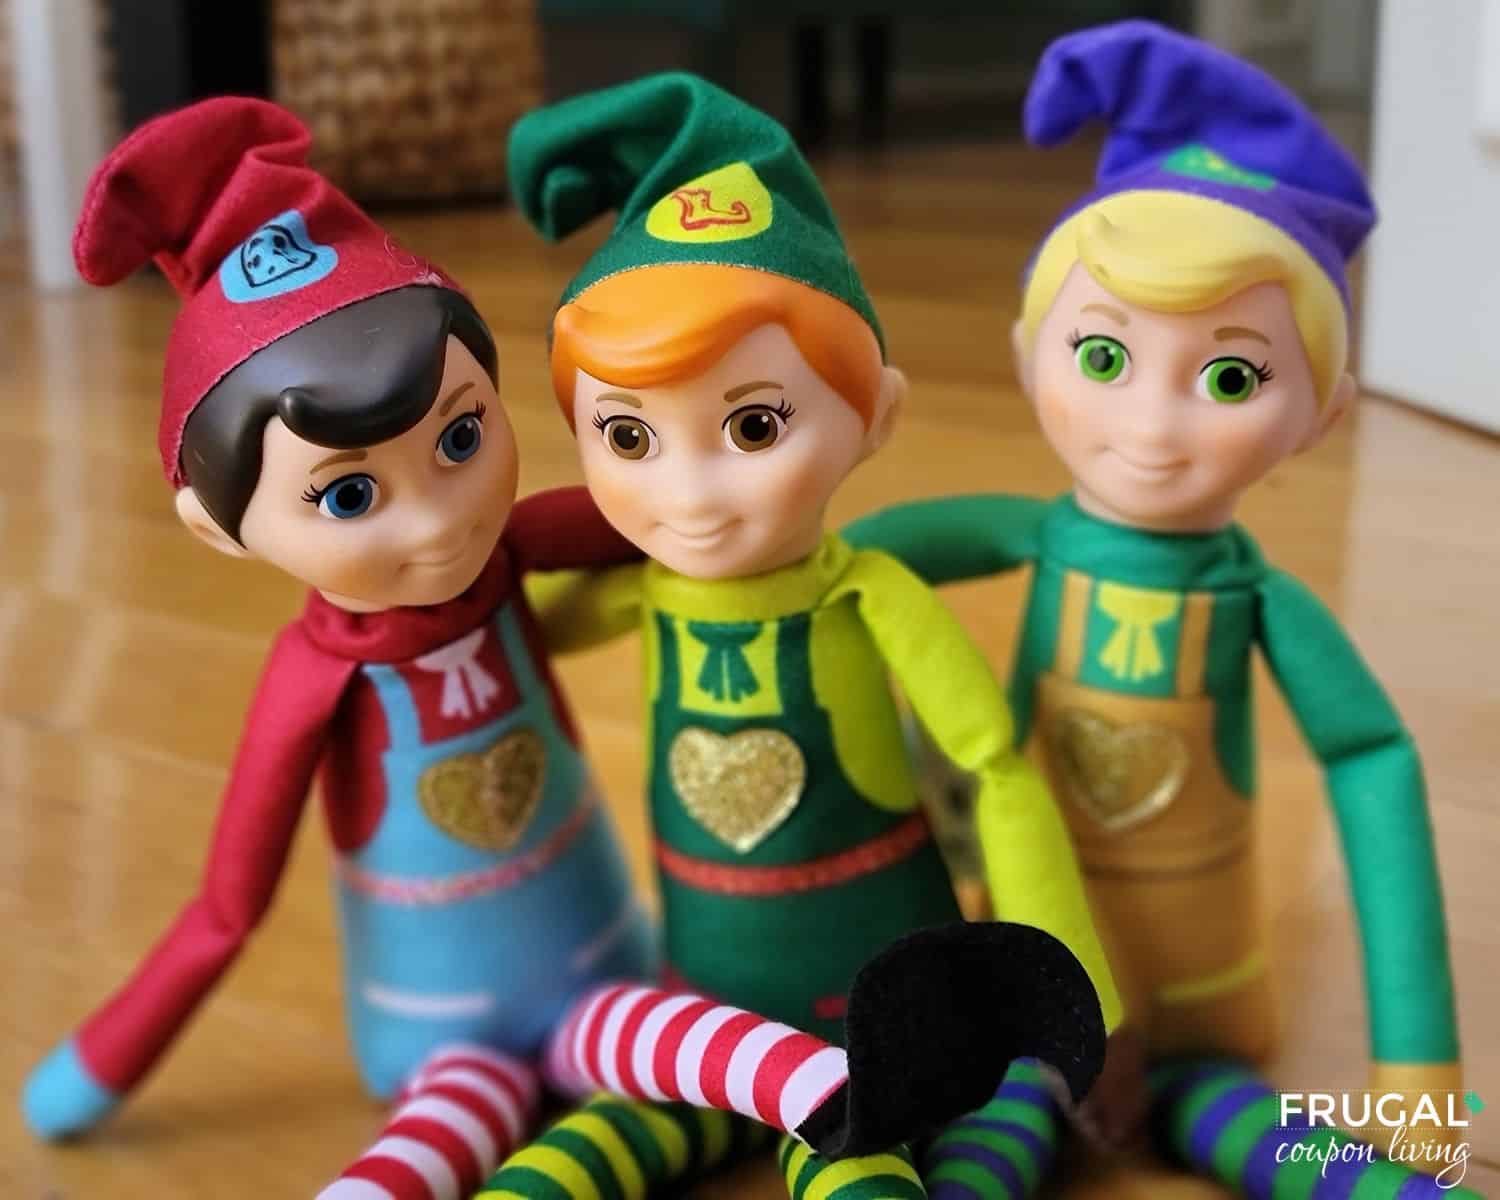 trio of elf dolls called elf mates